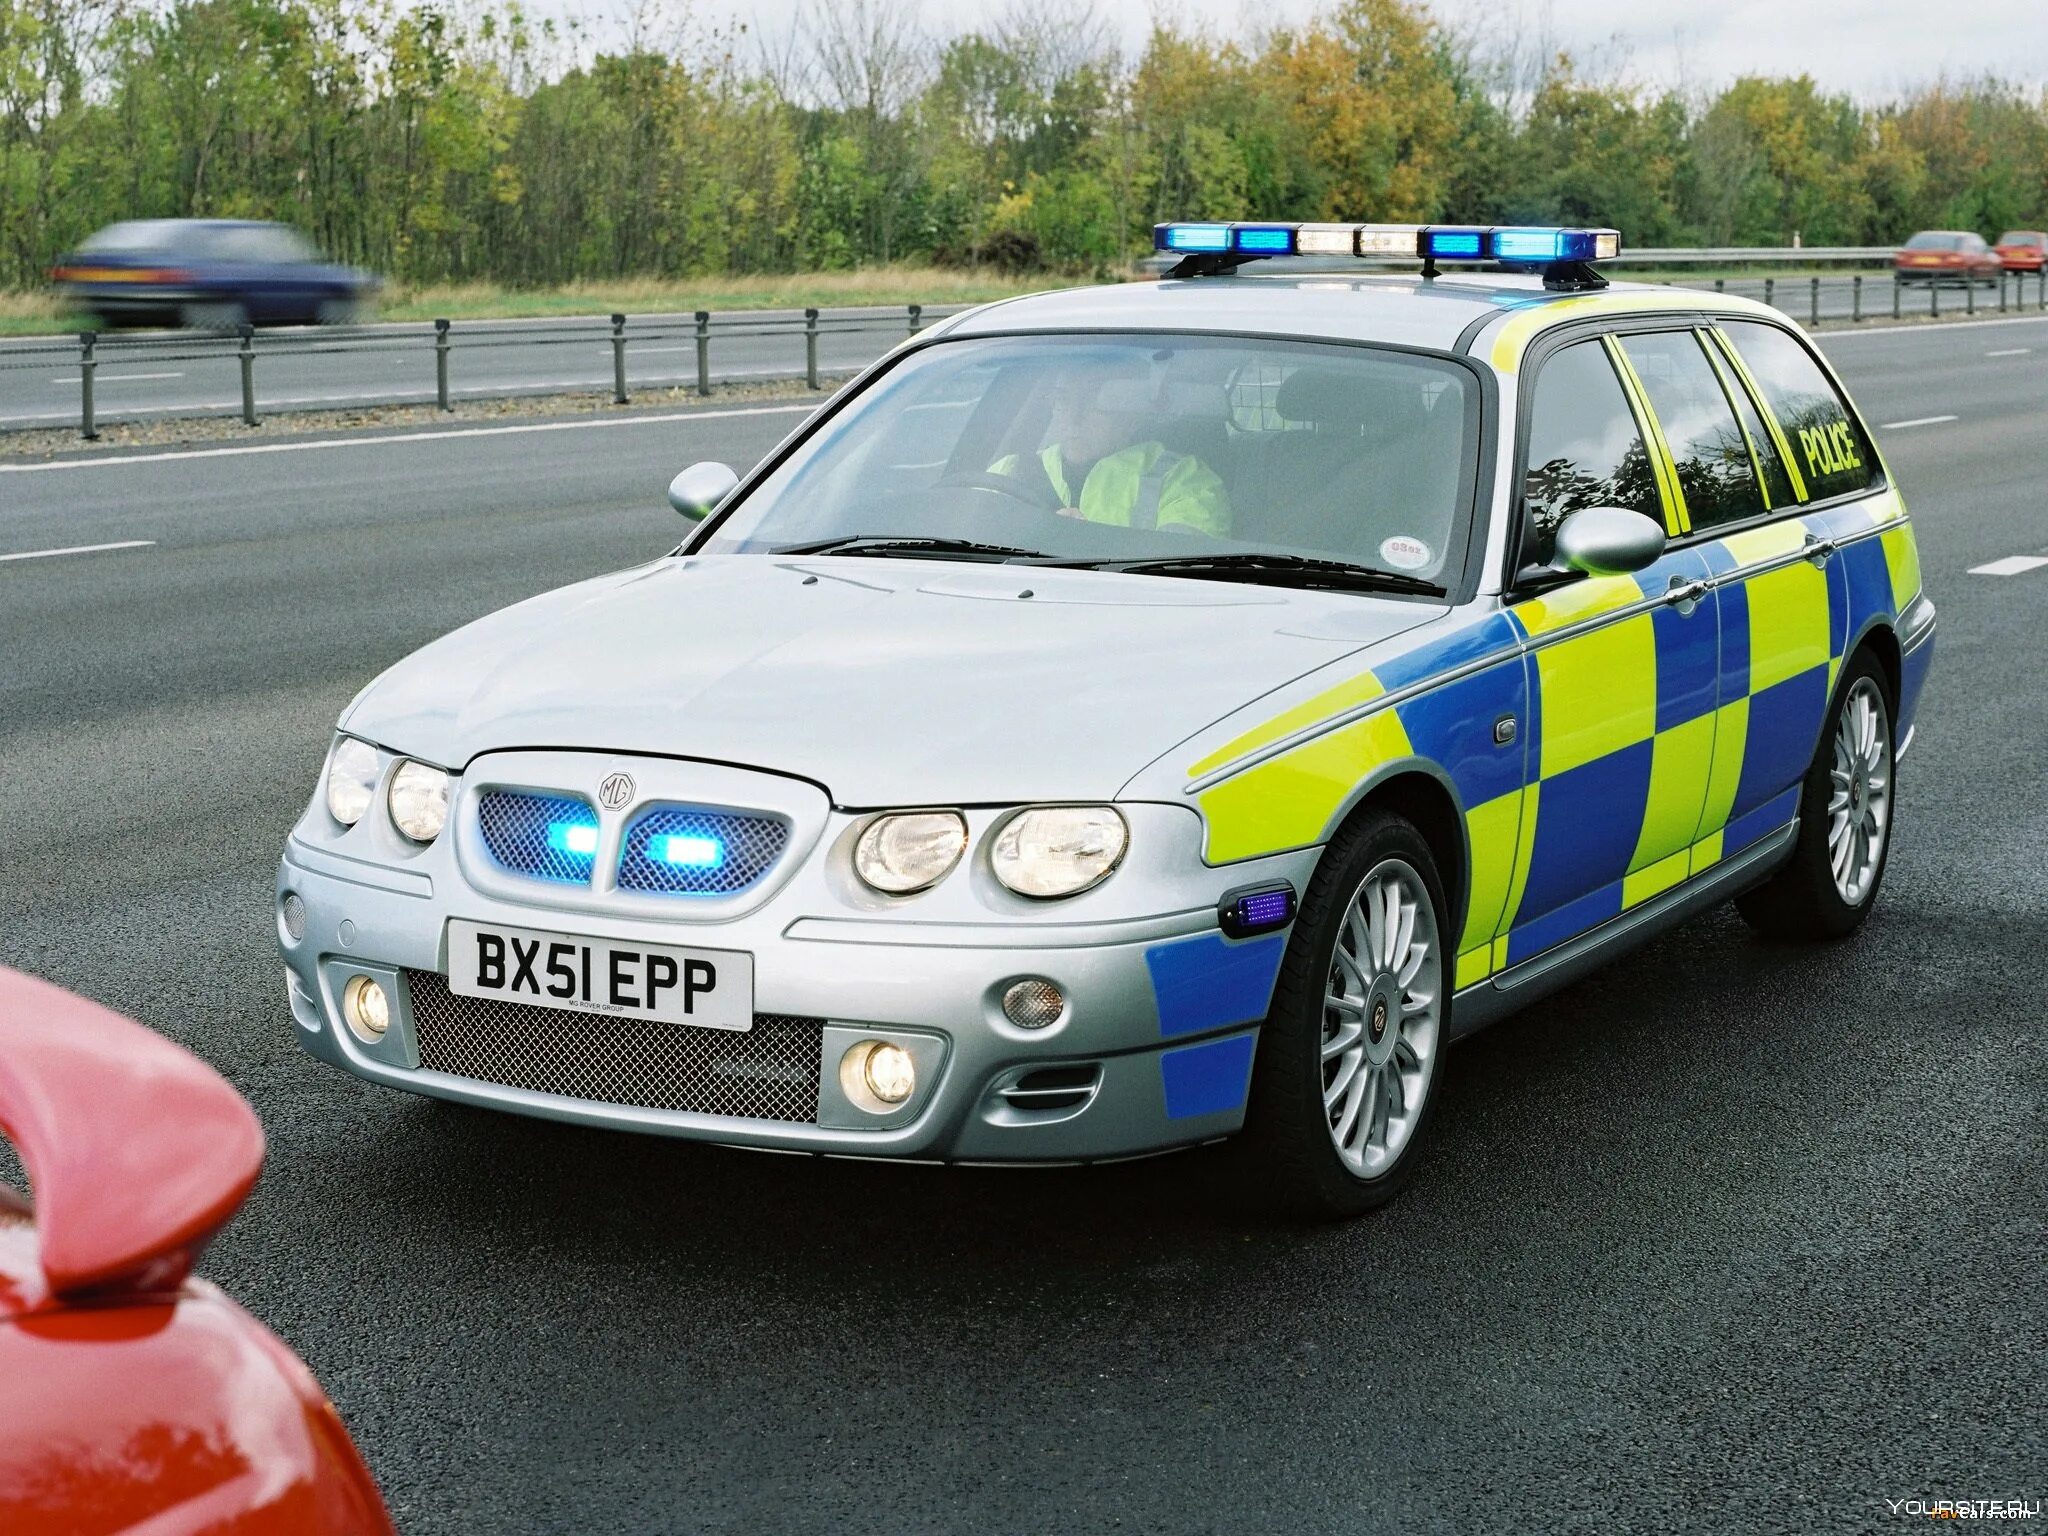 15 полицейская машина. BMW uk Police 2001. Полицейский Ровер 75. Автомобили полиции Великобритании. Полицейская машина Британия.